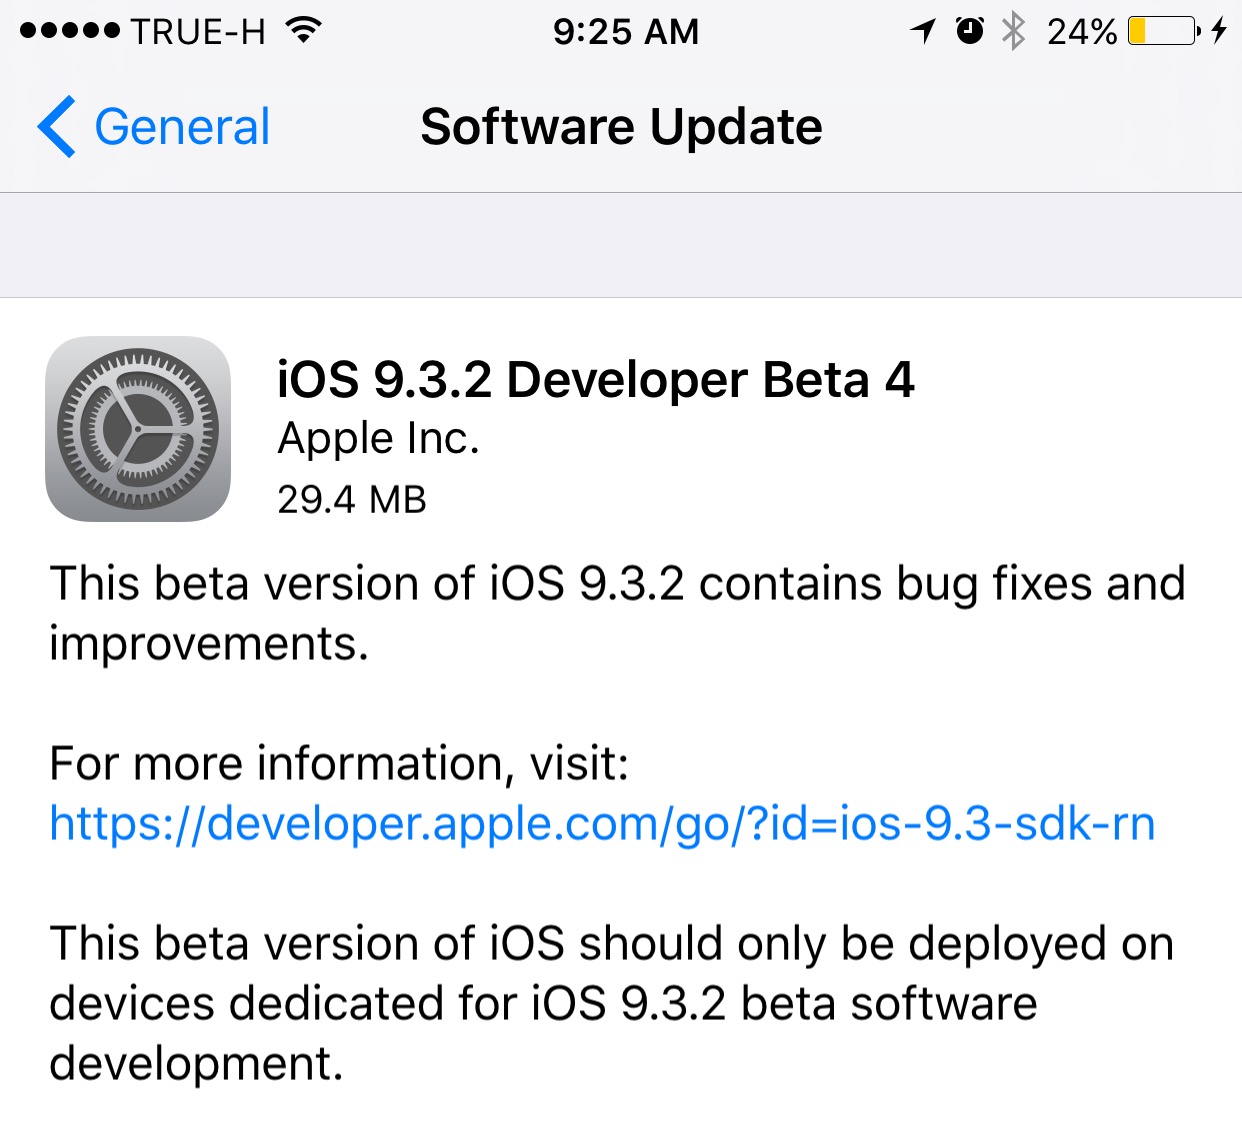 download the last version for apple PortableApps Platform 26.2